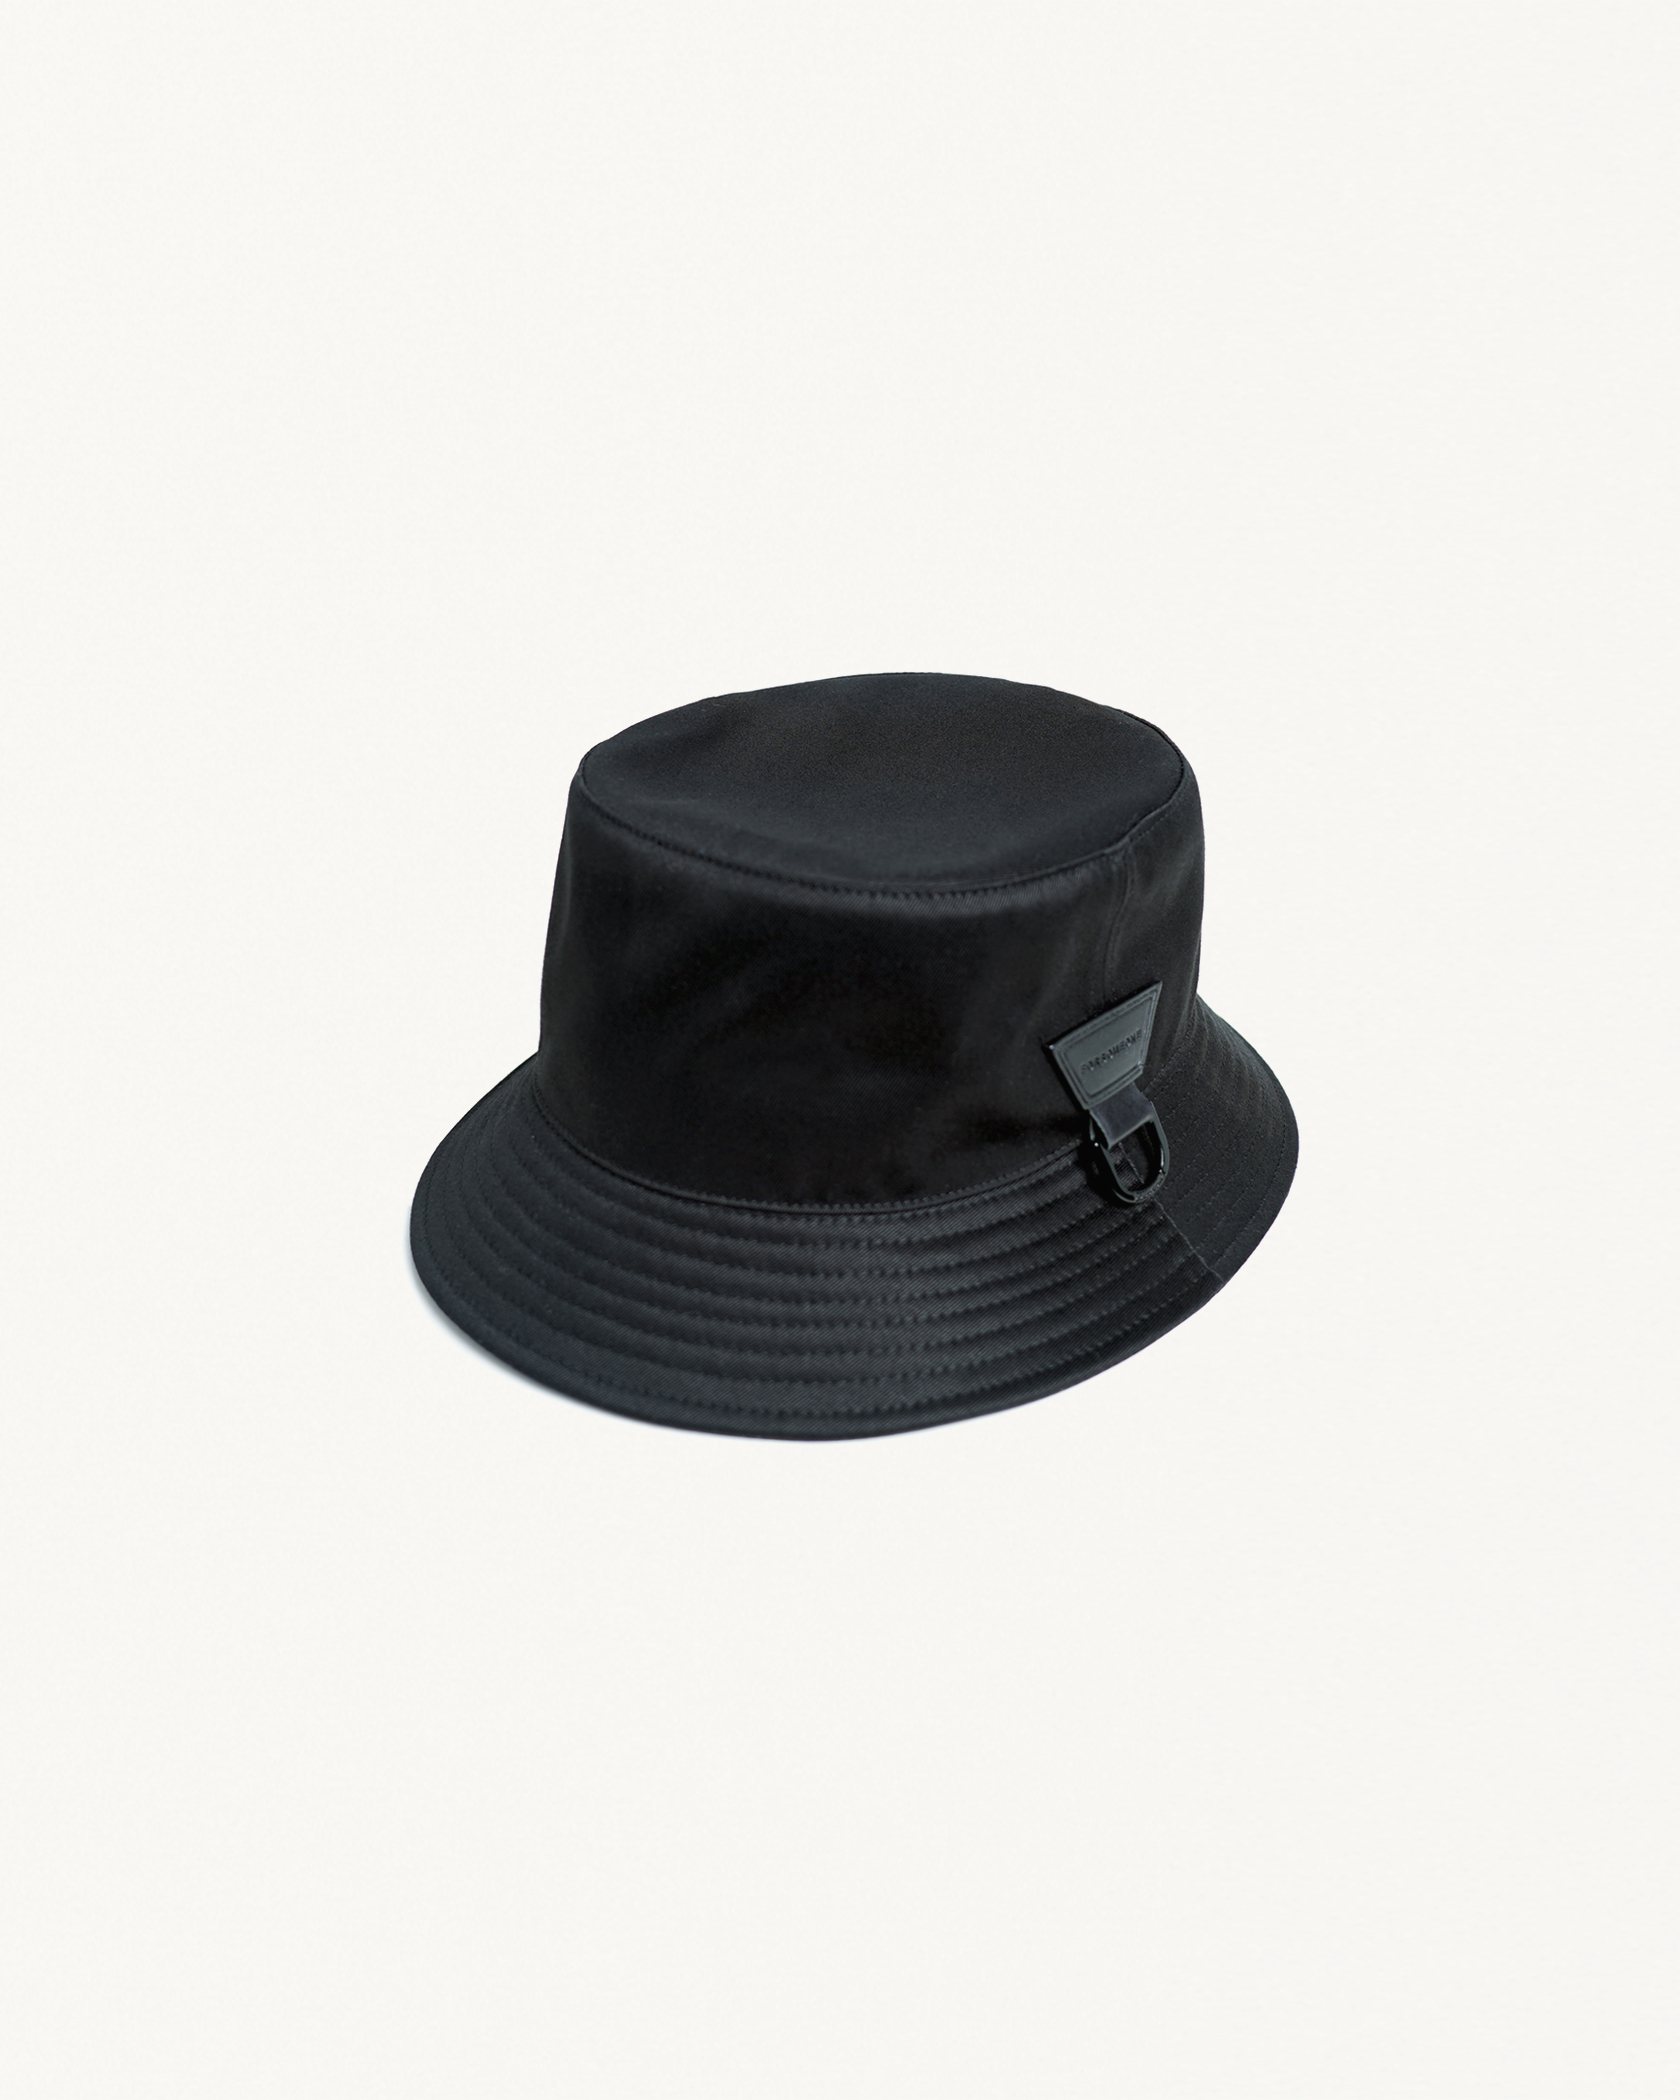 COTTON MOUNT HAT 2.0 詳細画像 Black x Silver 2